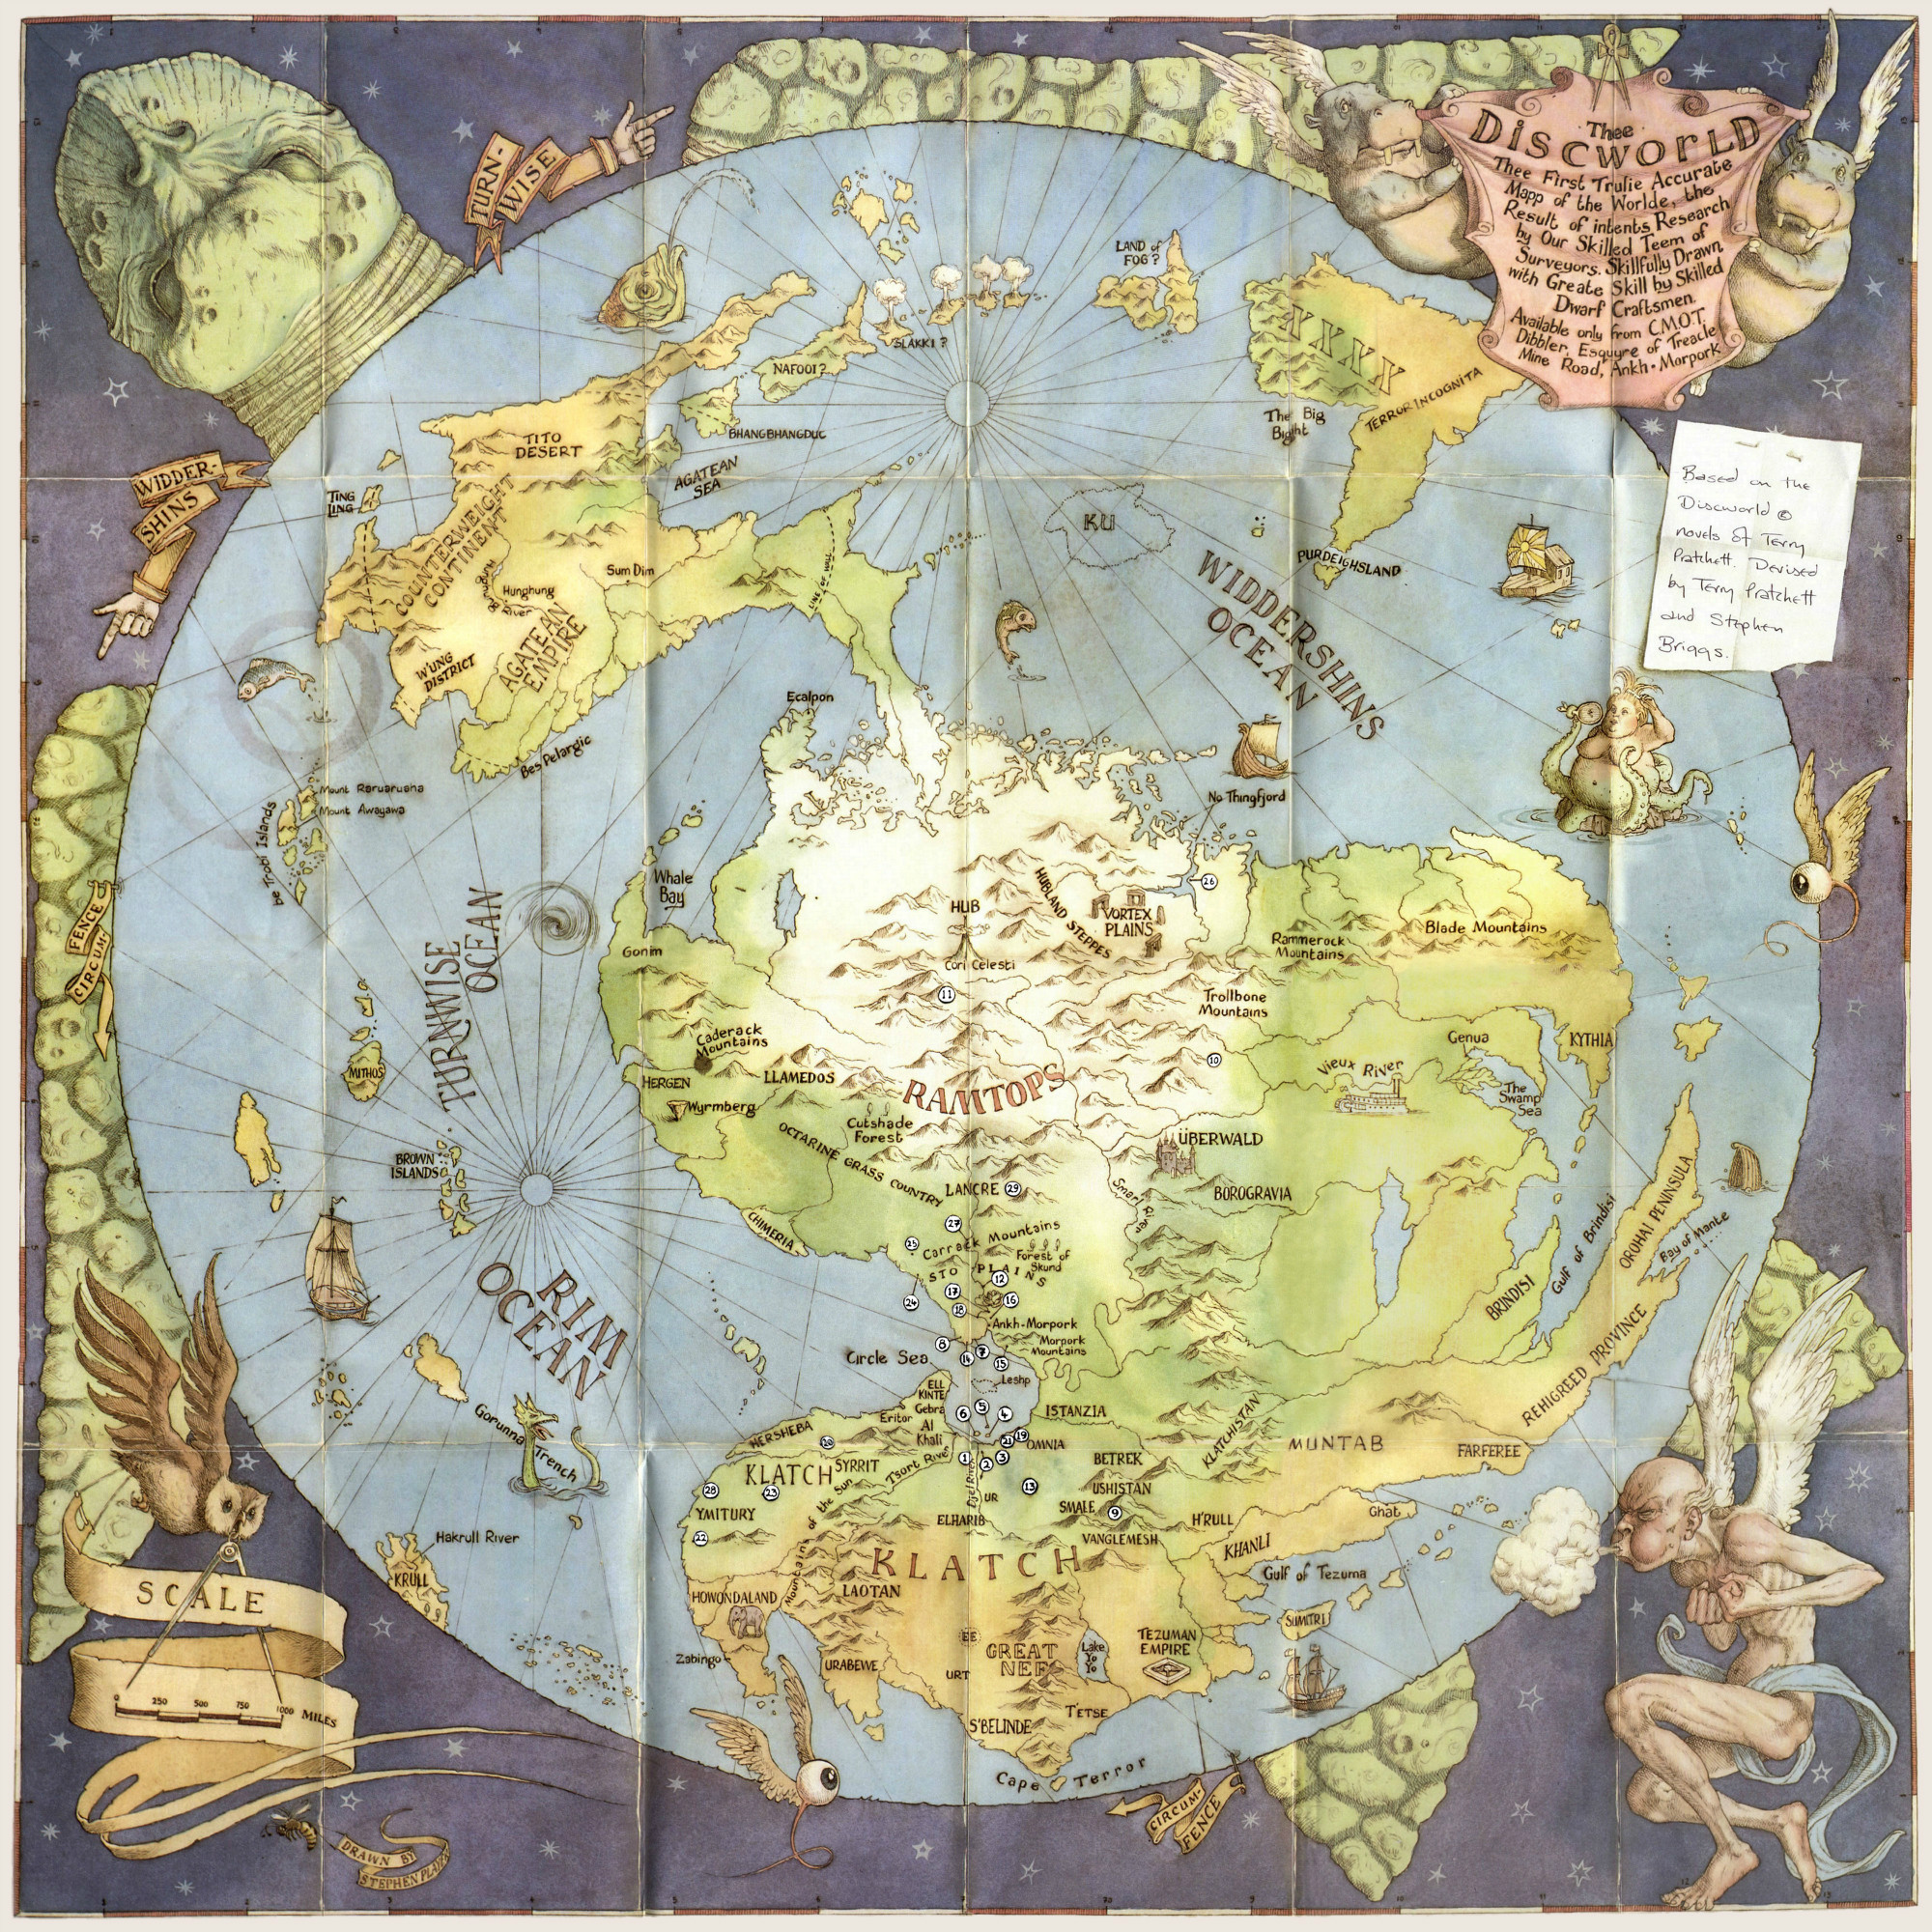 15 великолепных карт несуществующих миров вымышленные миры,интересное,карты,фэнтези